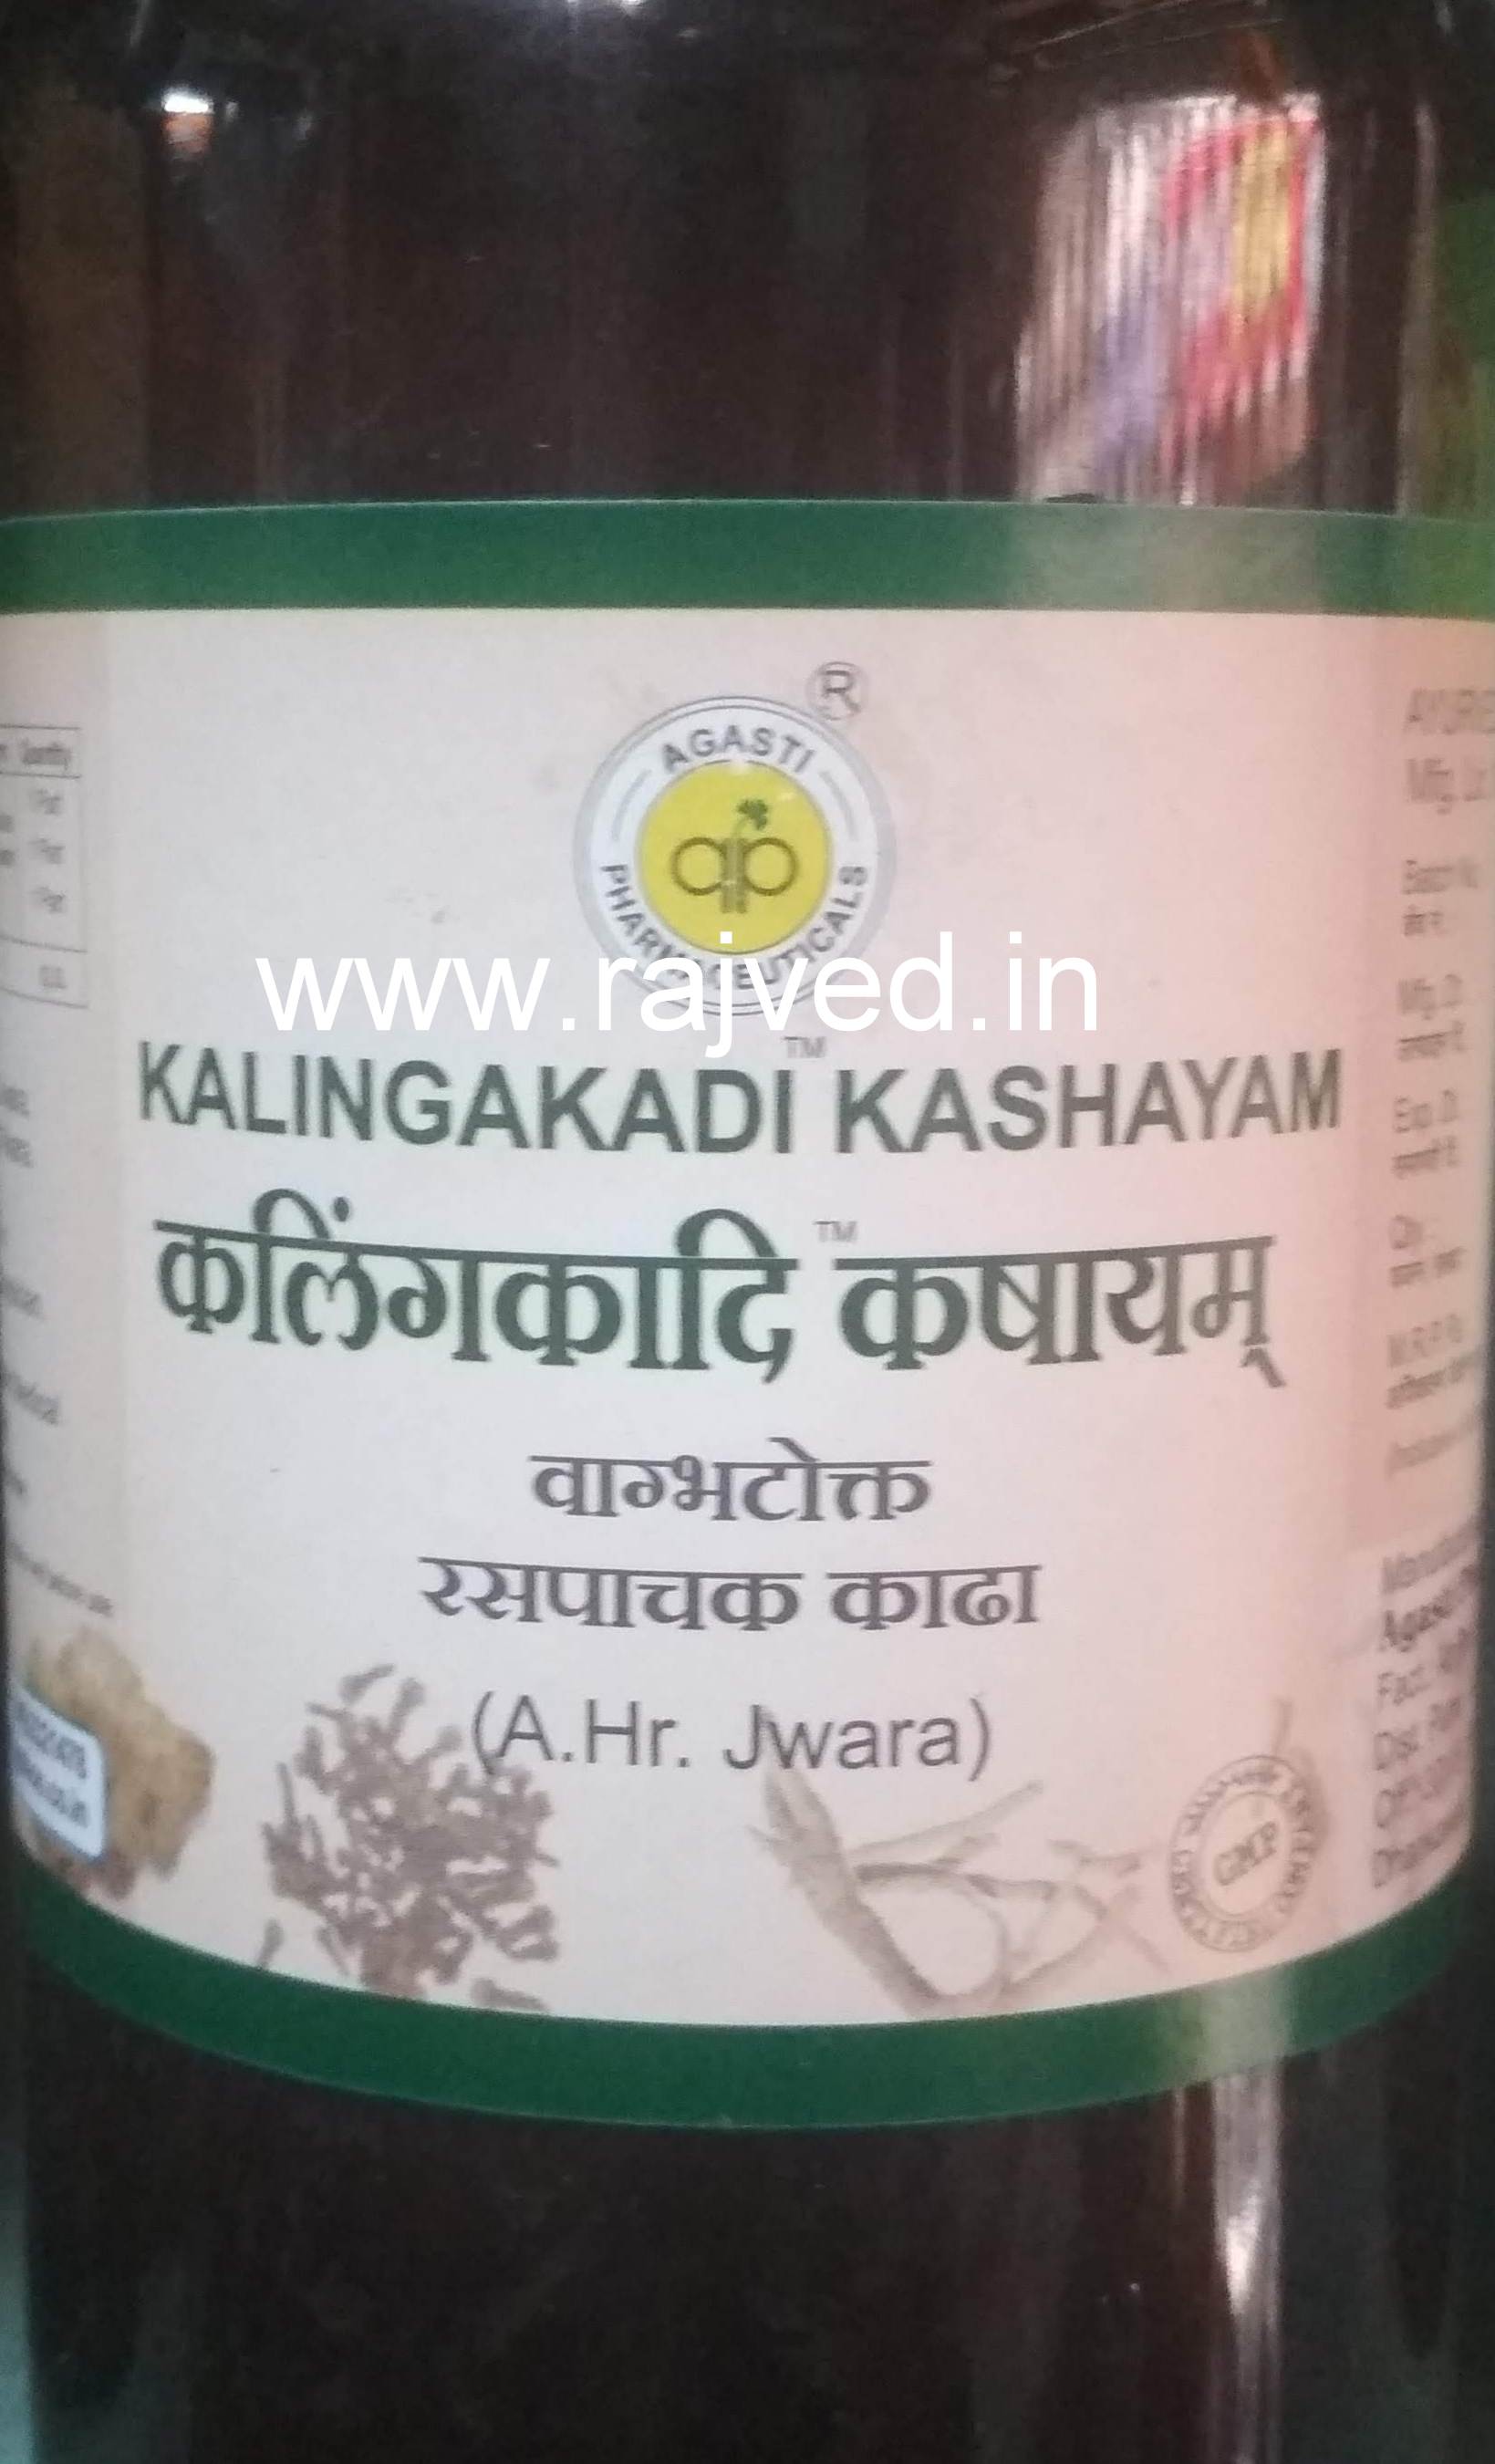 kalingakadi kashayam 200ml upto 15% off Agasti Pharmaceuticals